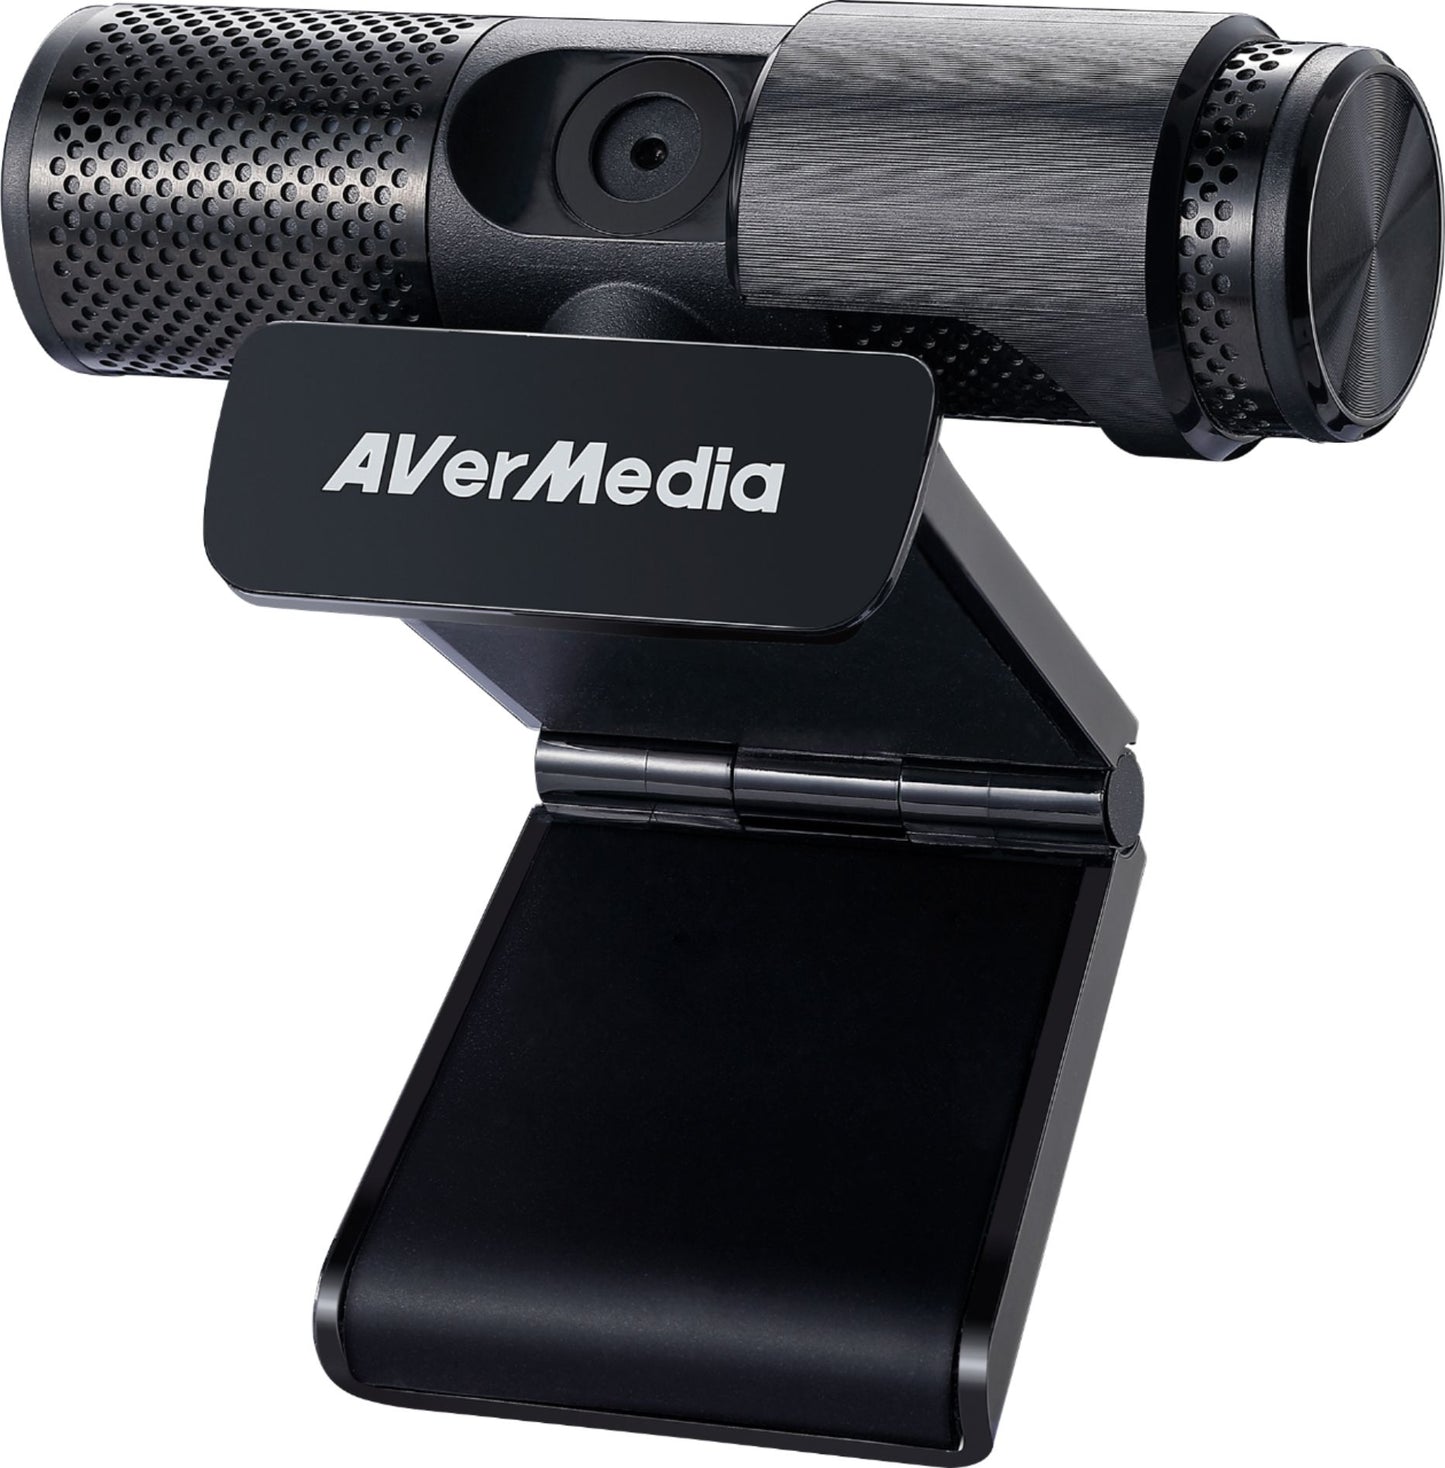 AVerMedia - Live Streamer DUO Webcam Bundle - Rekes Sales